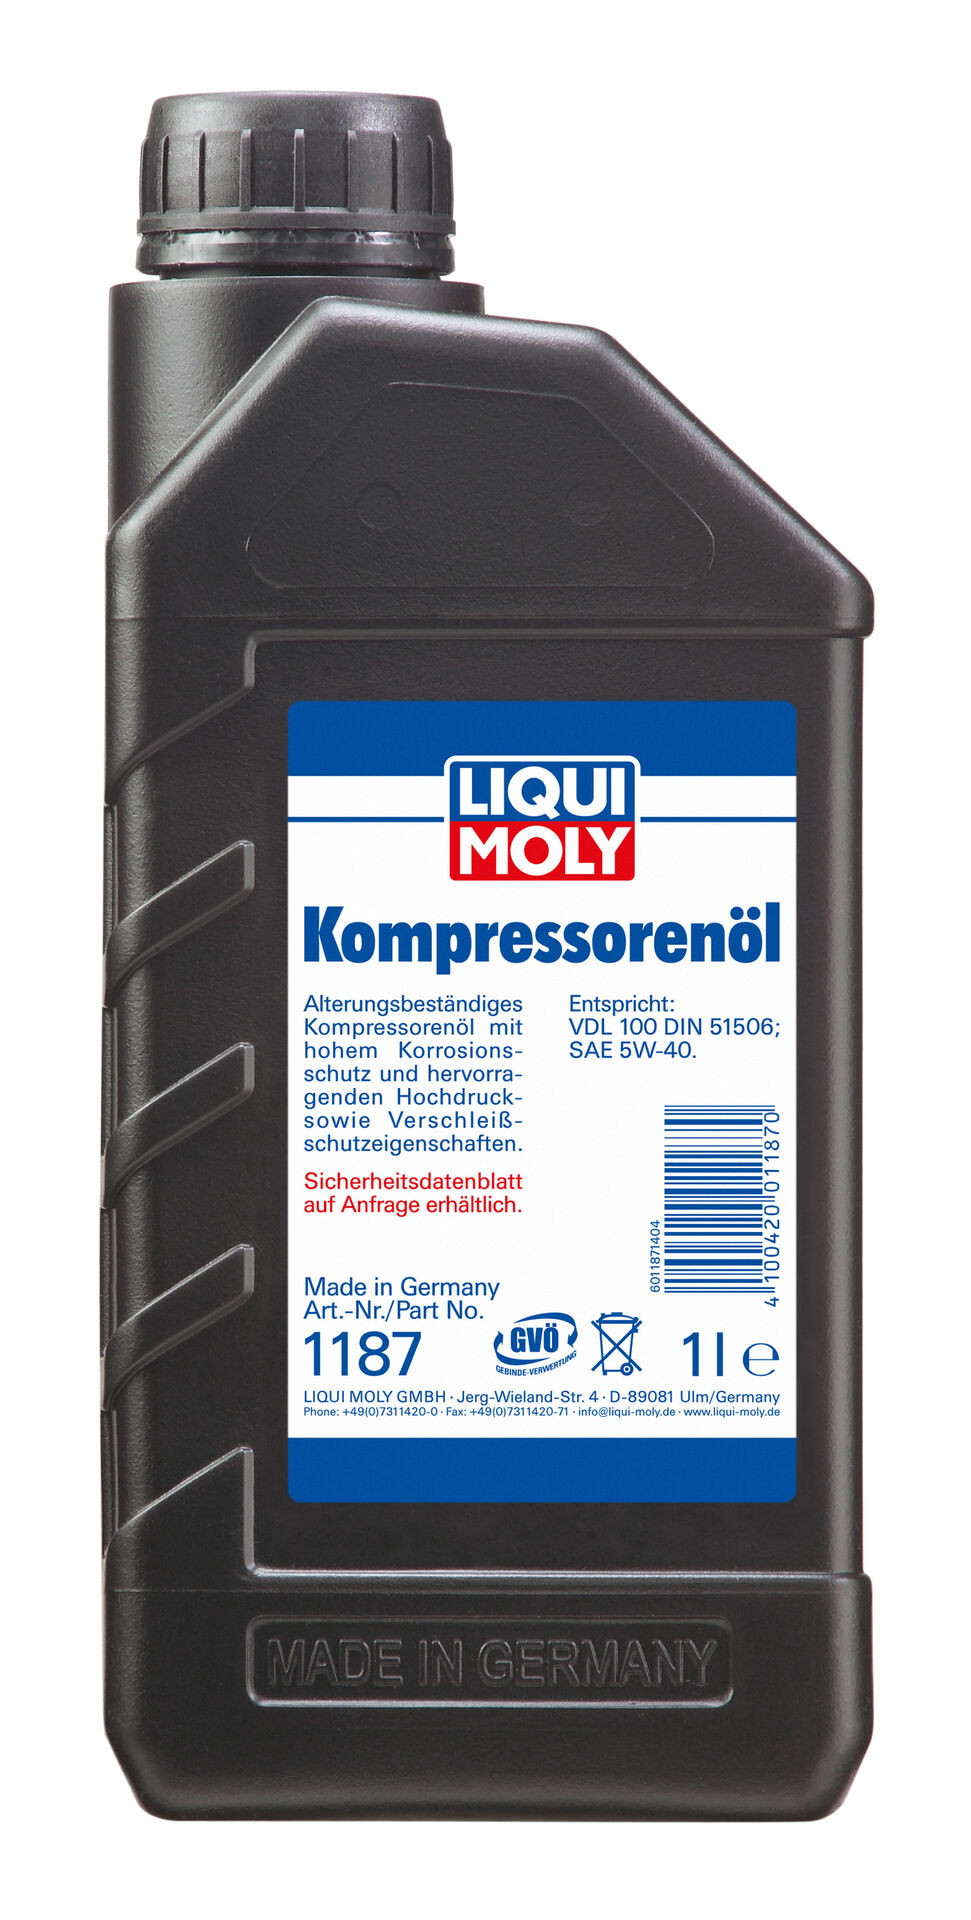 Liqui Moly 1L Kompressorenöl SAE 5W-40 VDL 100 DIN 51506 Korrosionsschutz